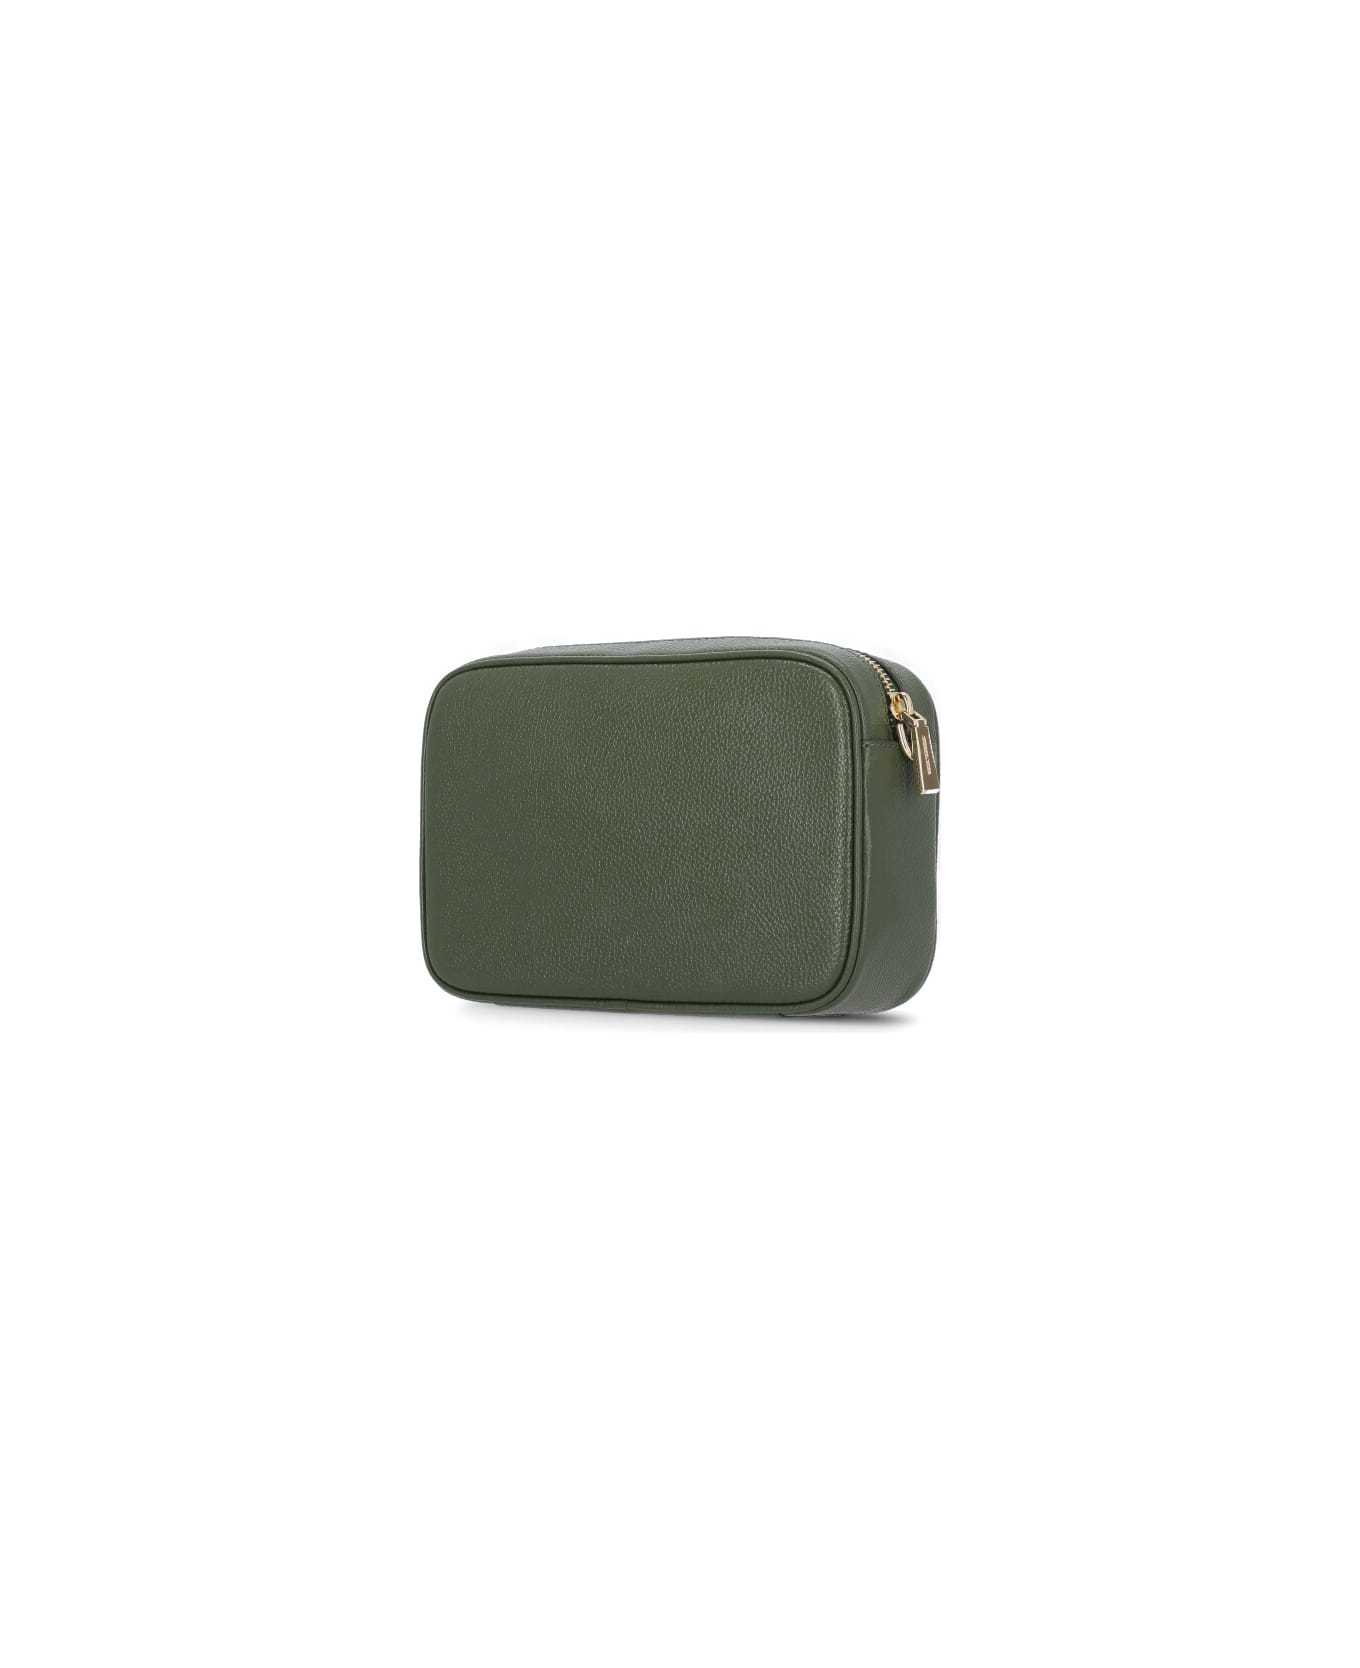 Michael Kors Leather Shoulder Bag - green